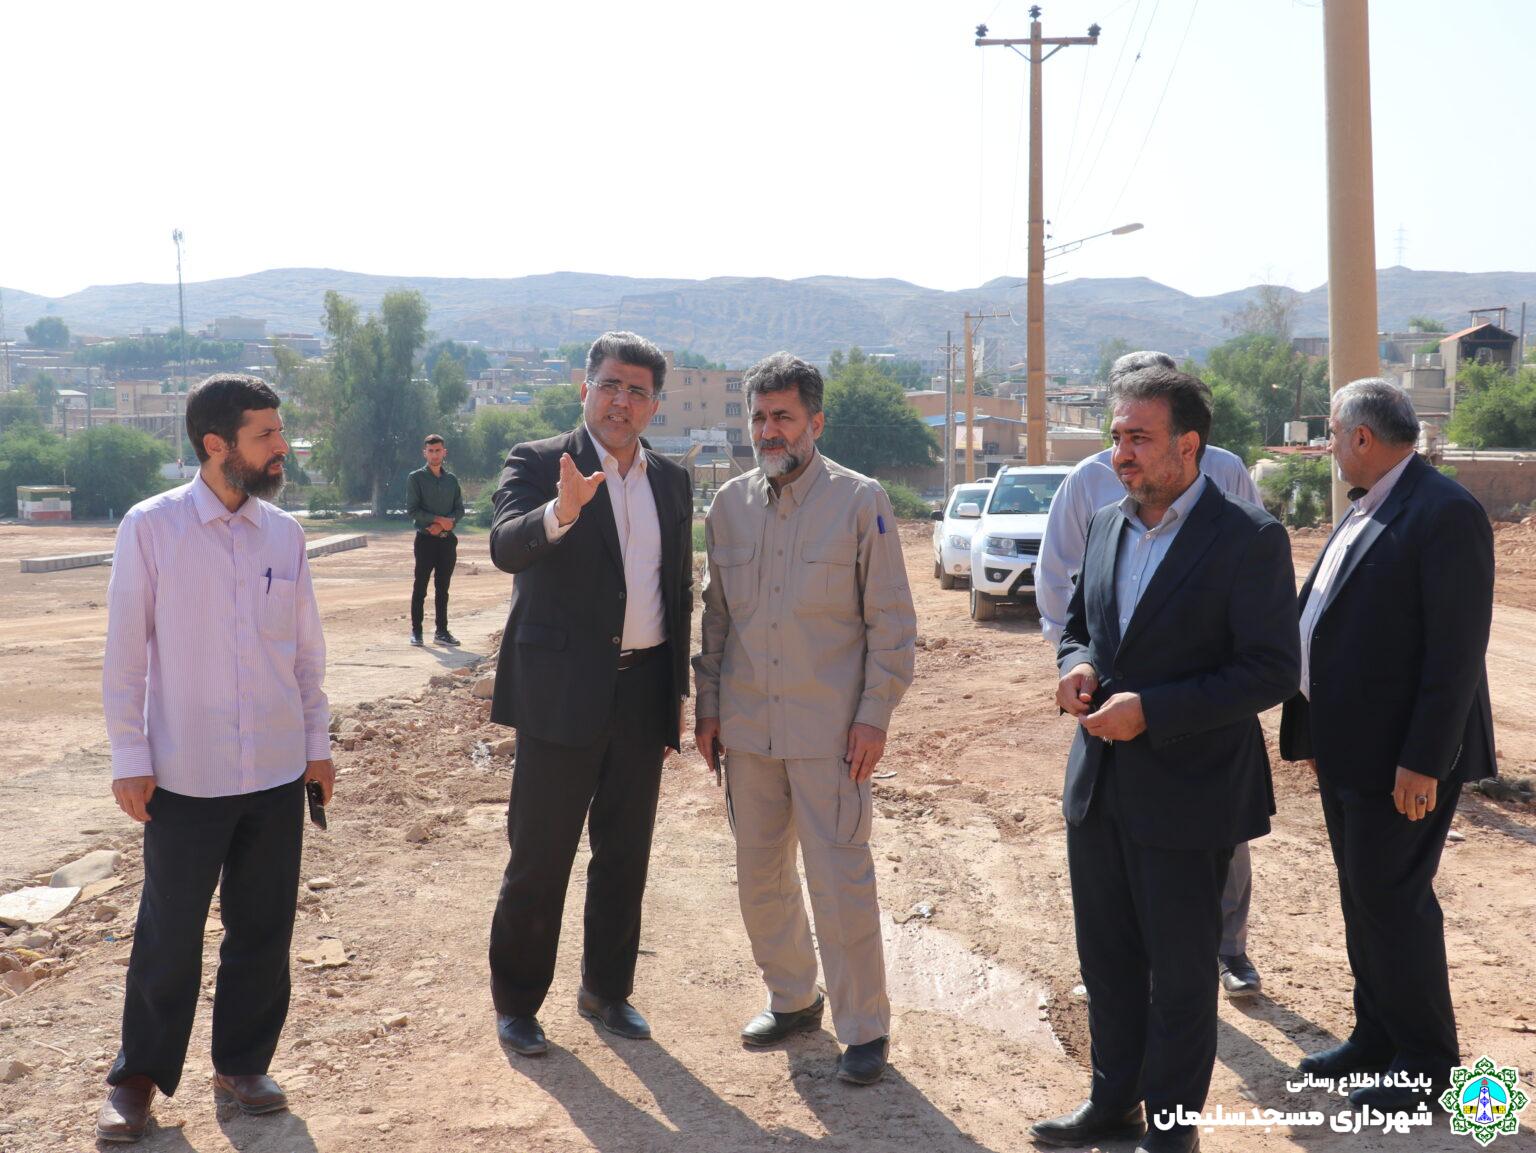 بازدید میدانی مدیرکل امورشهری و شوراهای استانداری خوزستان و شهردار مسجدسلیمان از پروژه جاده دسترسی فرودگاه